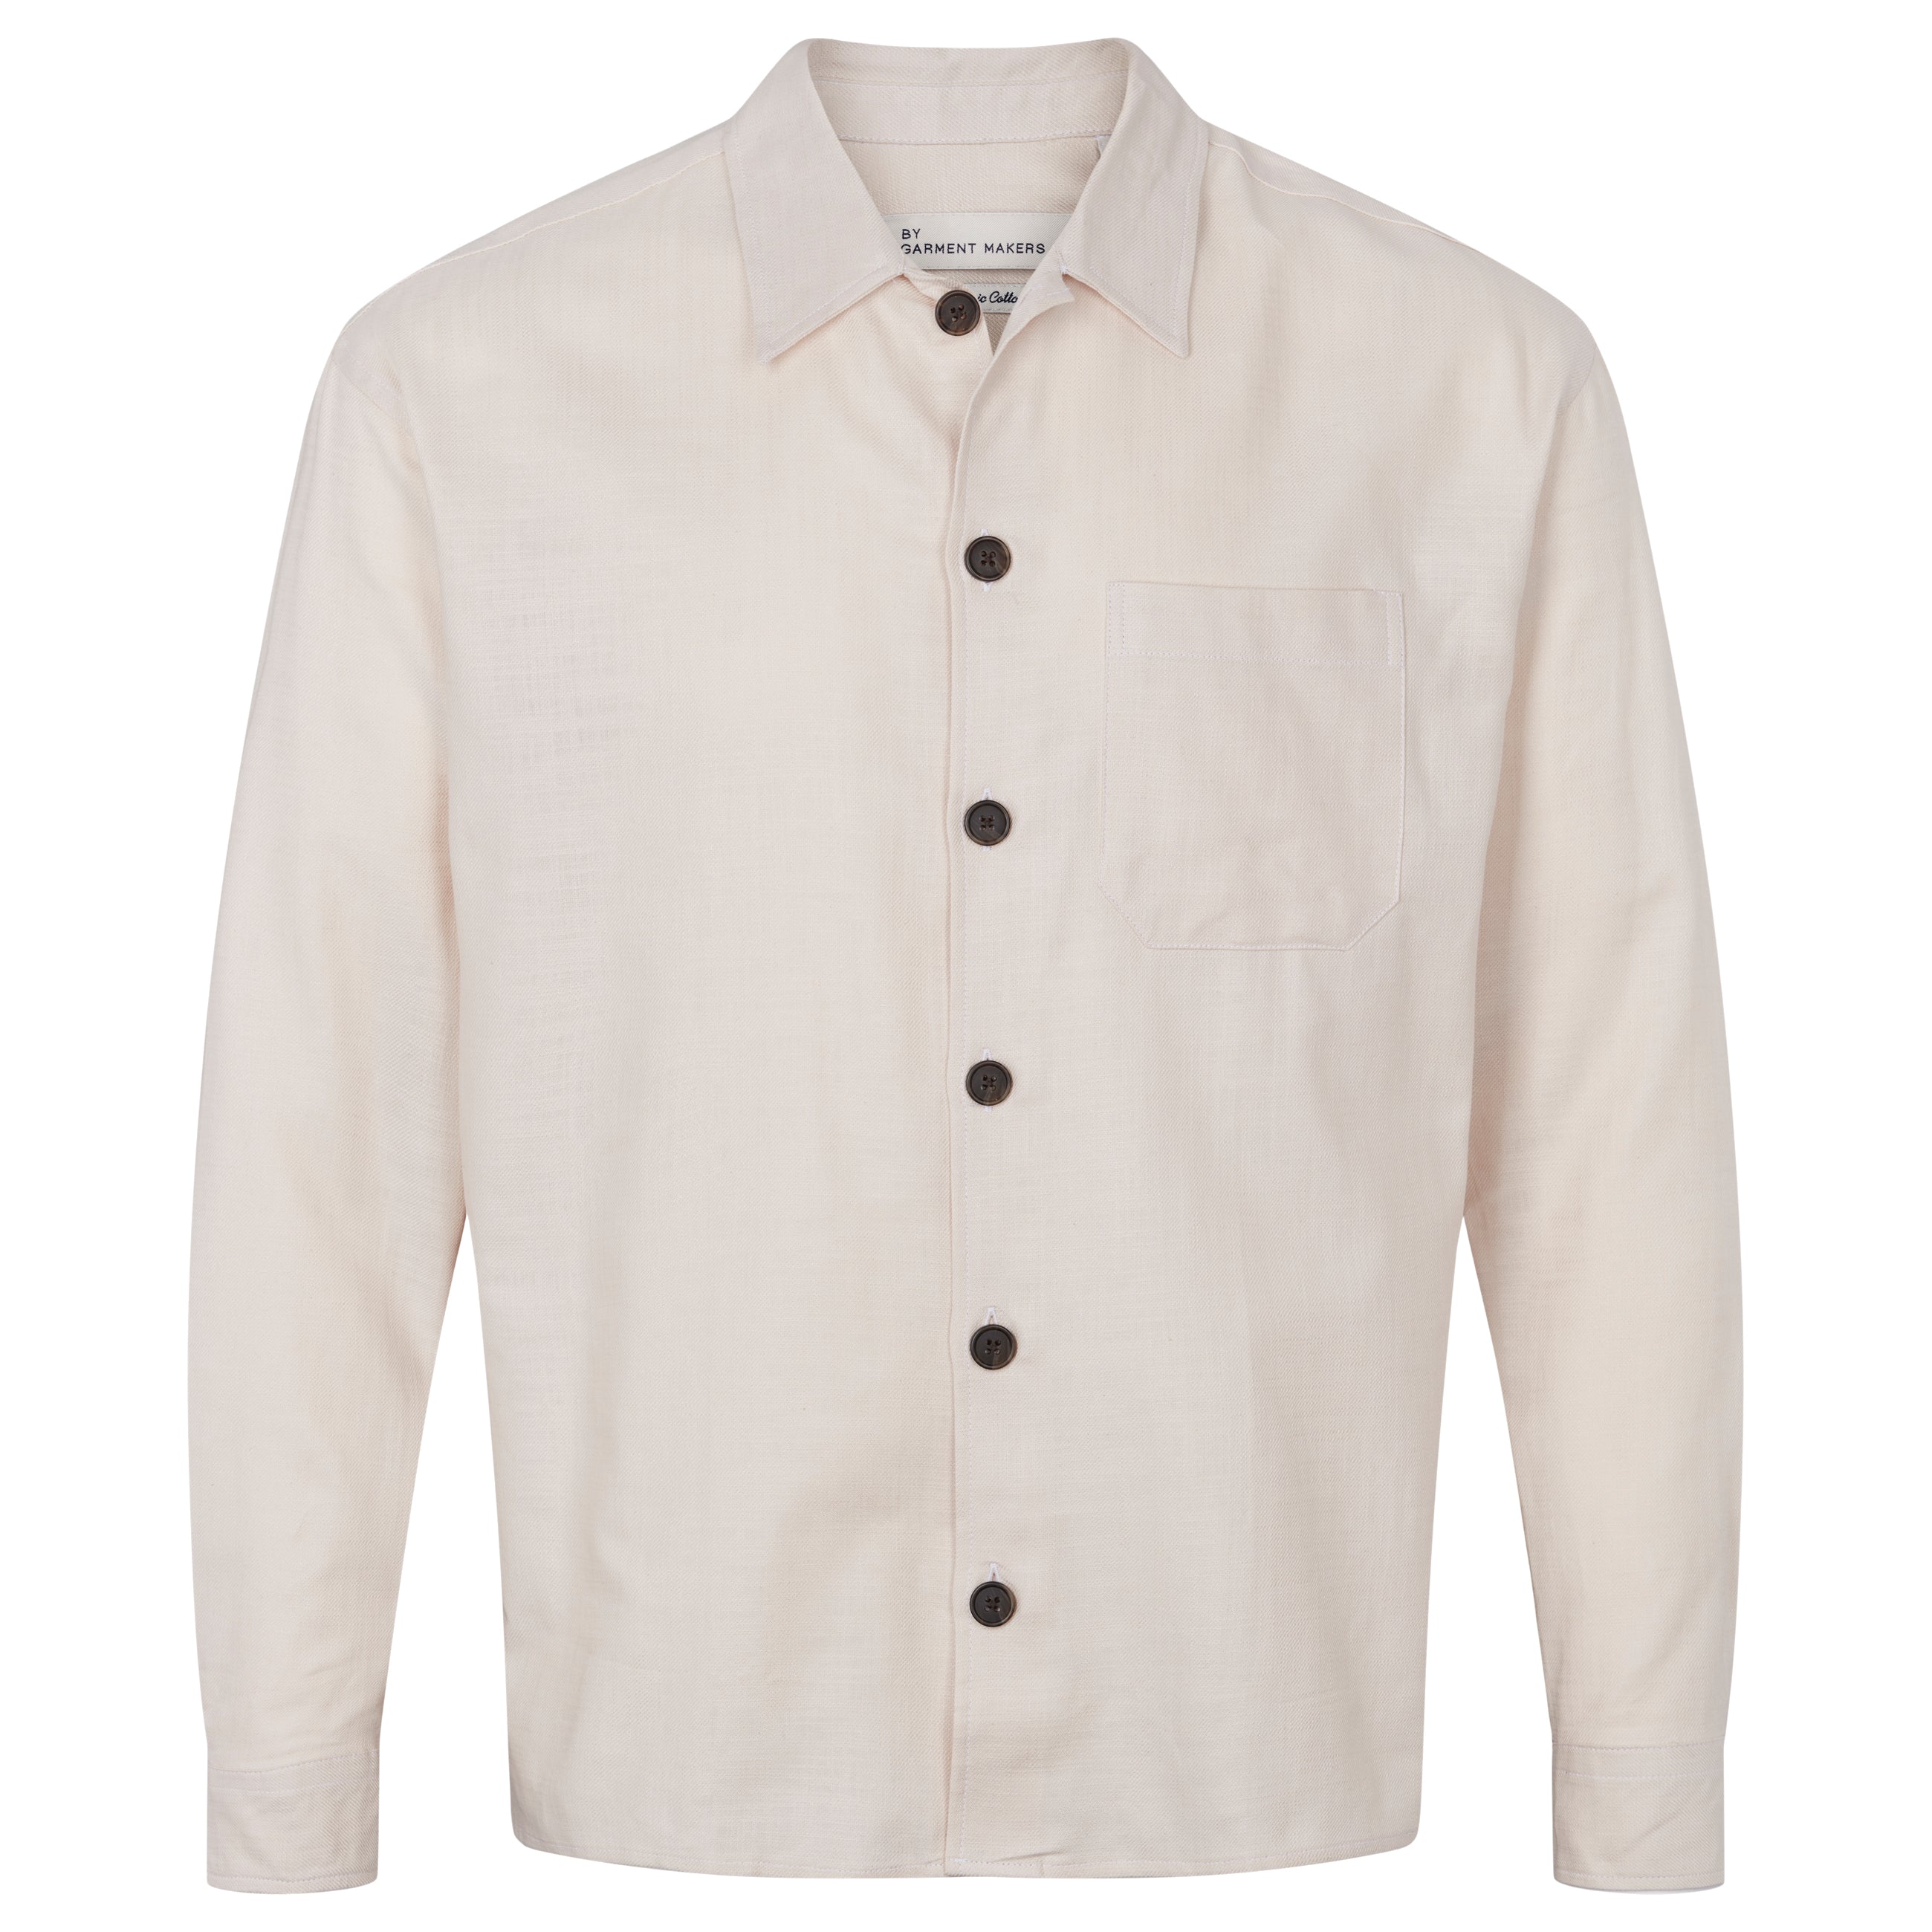 By Garment Makers Storm Plain Overshirt Shirt LS 1130 Honesty